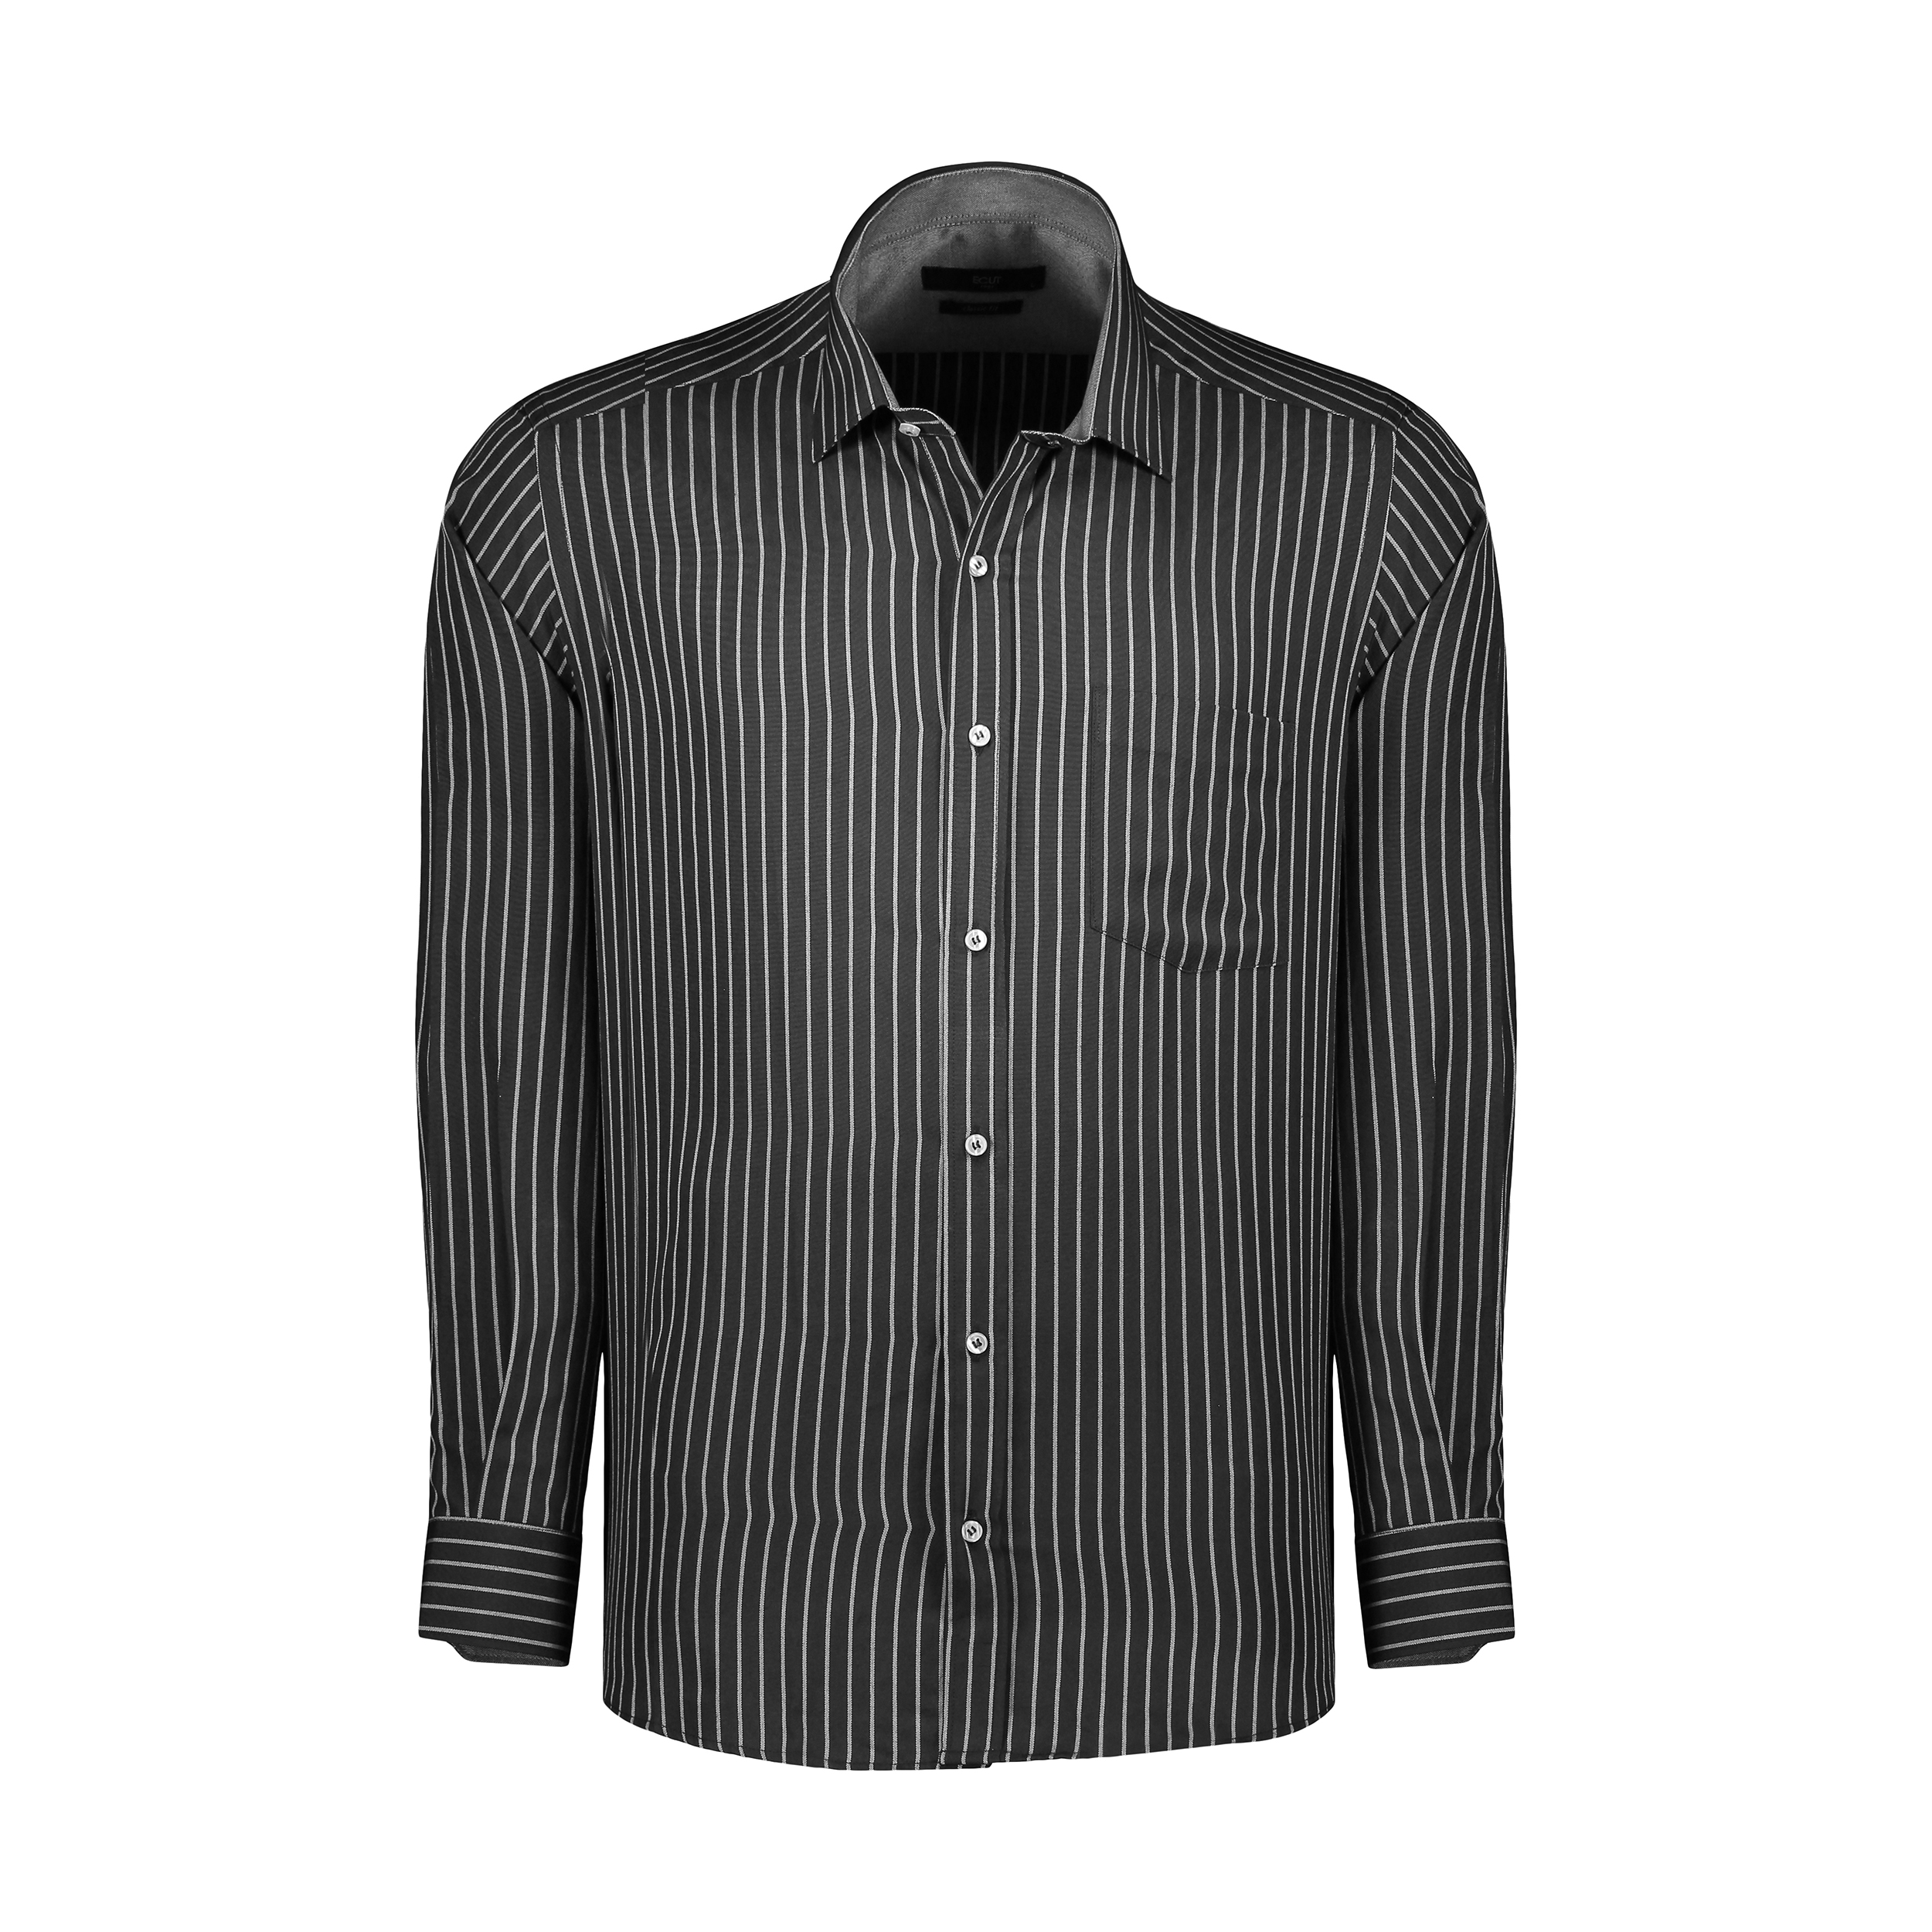 پیراهن آستین بلند مردانه ایکات مدل ST1151998 رنگ مشکی